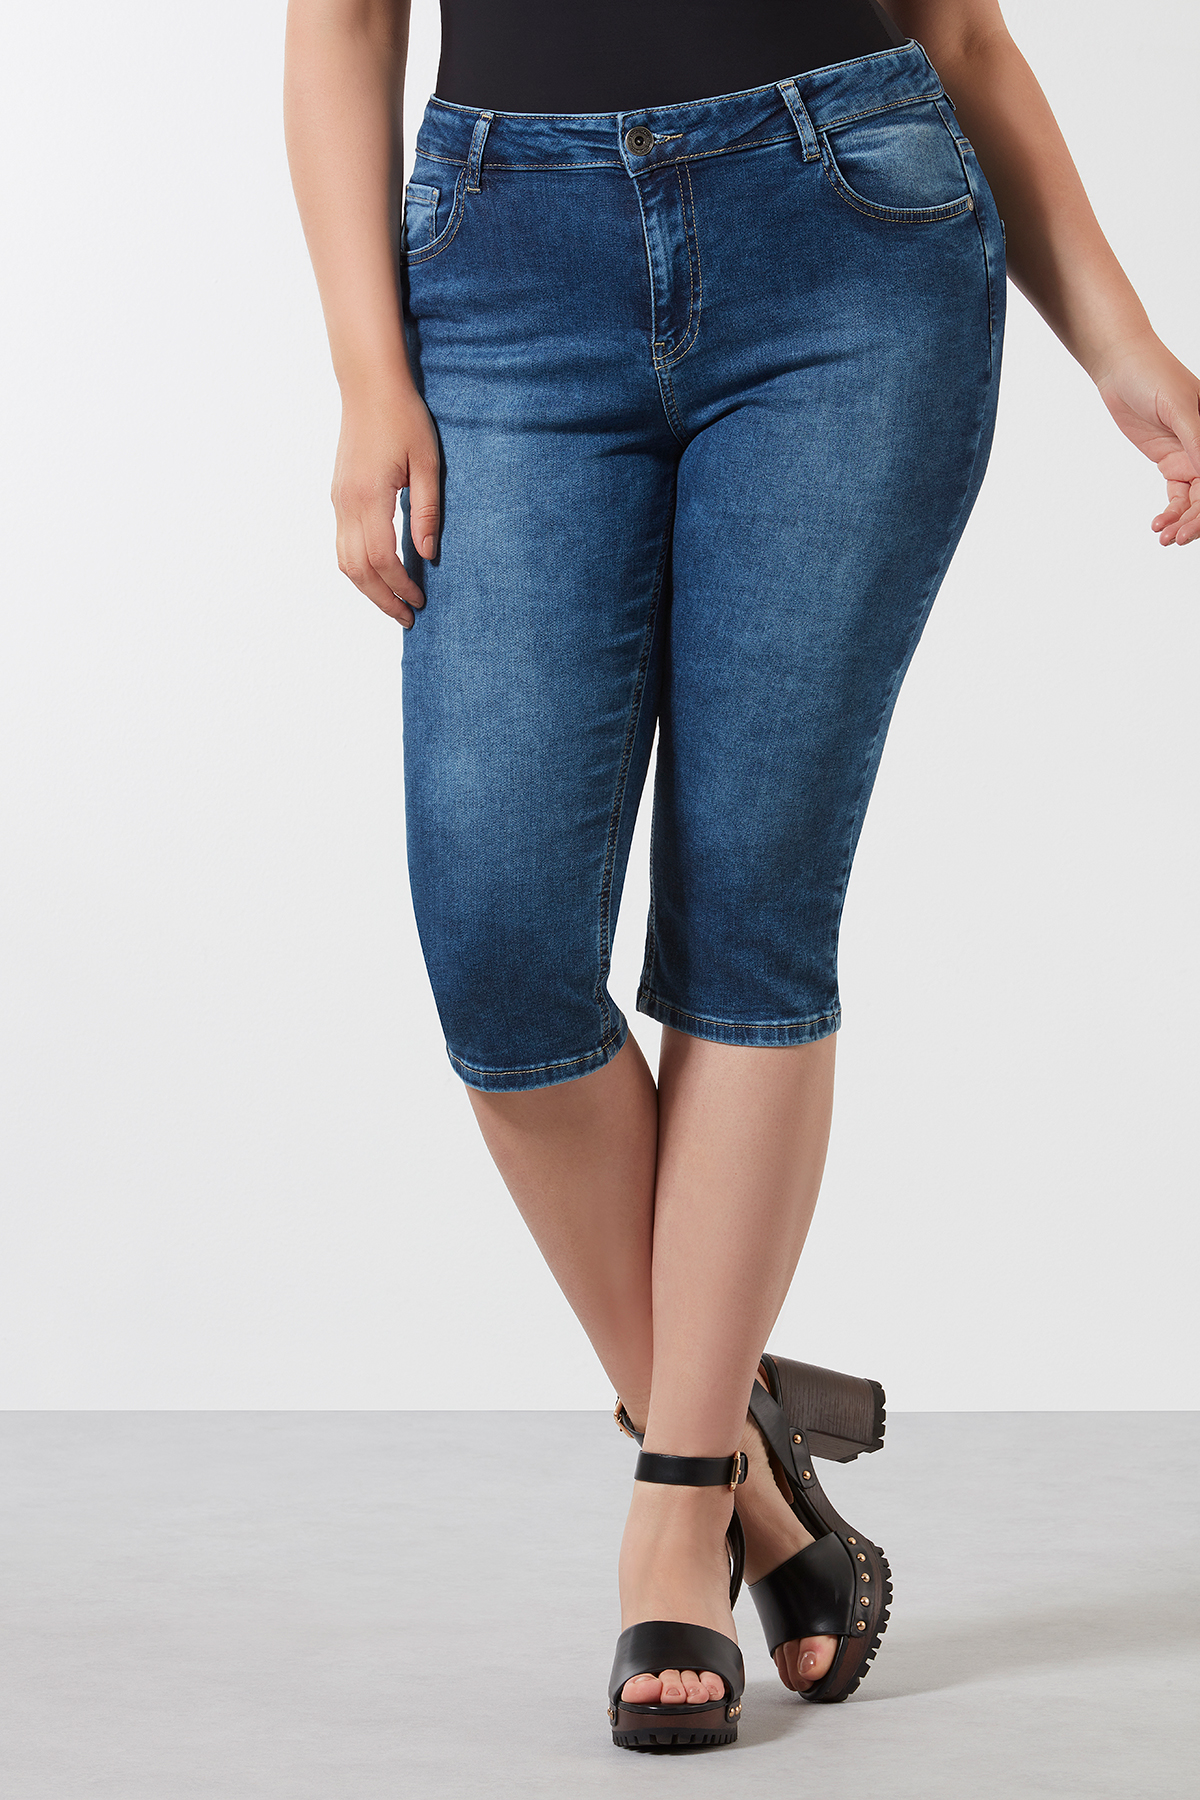 Fysica Bekritiseren dividend Dames Skinny leg capri jeans SHAPING | MS Mode